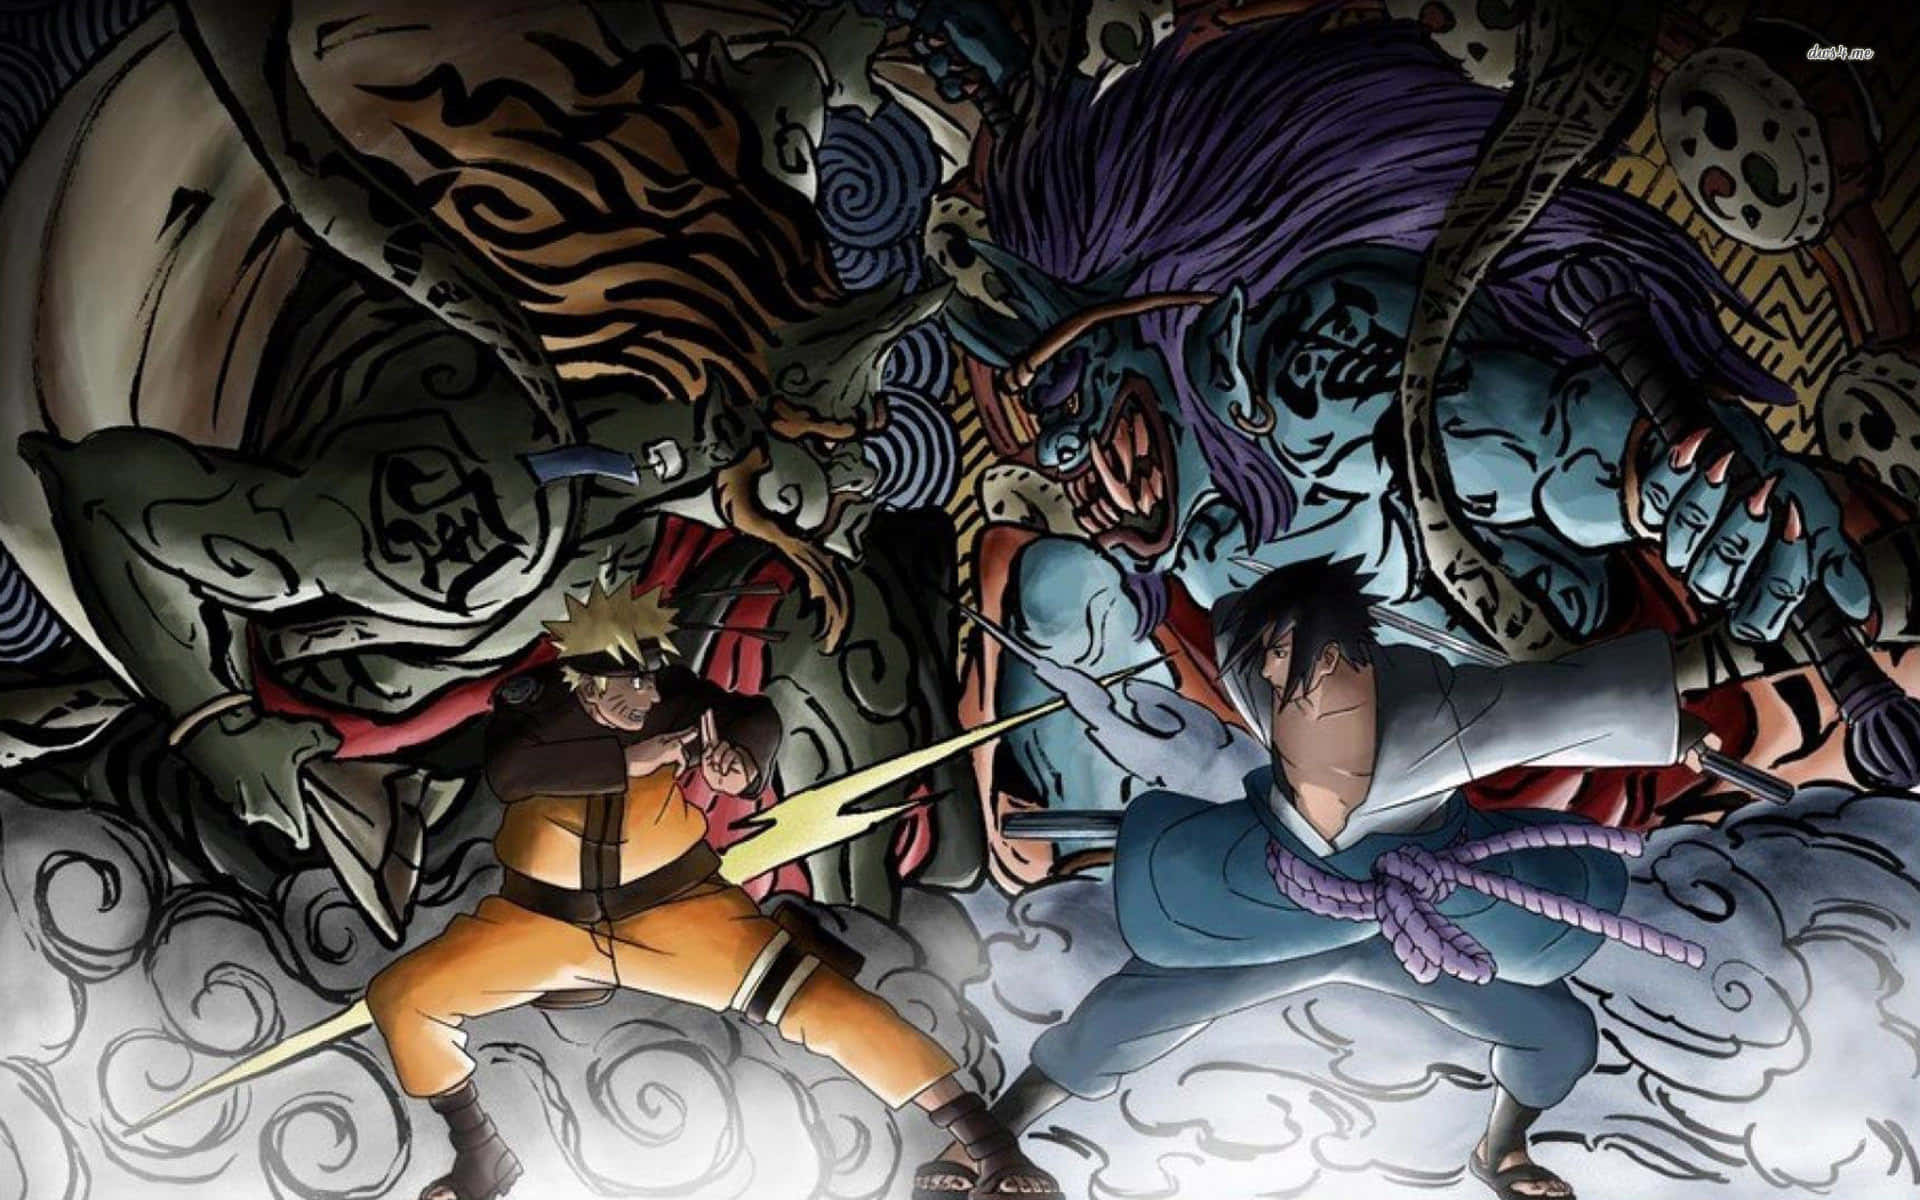 Coolanaruto-skrivbordsbakgrunden Med Naruto Och Sasukes Kamp. Wallpaper